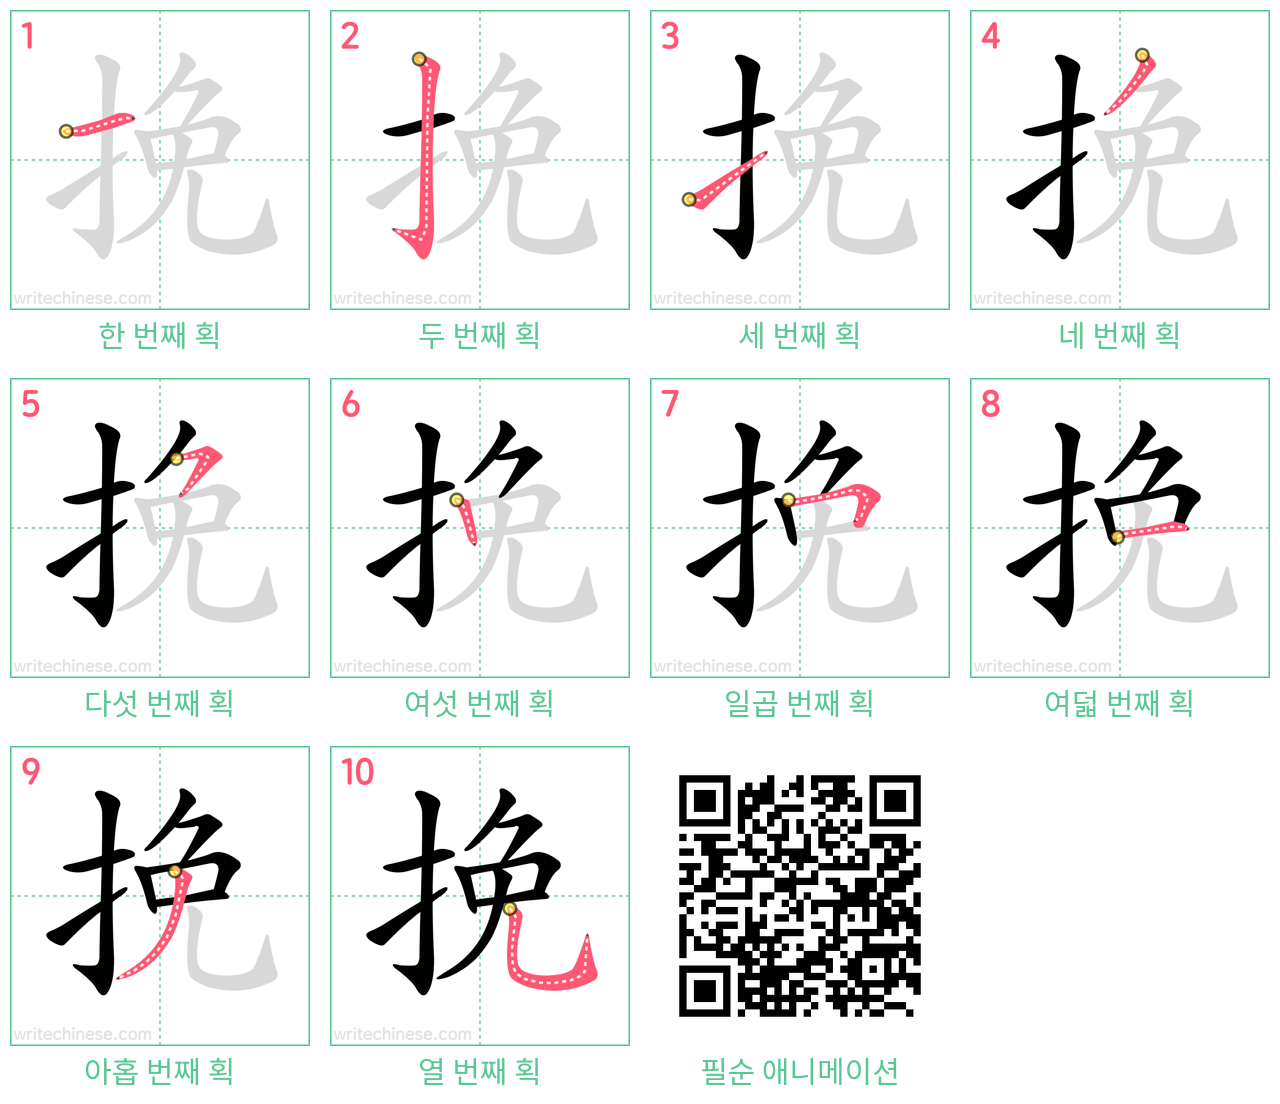 挽 step-by-step stroke order diagrams